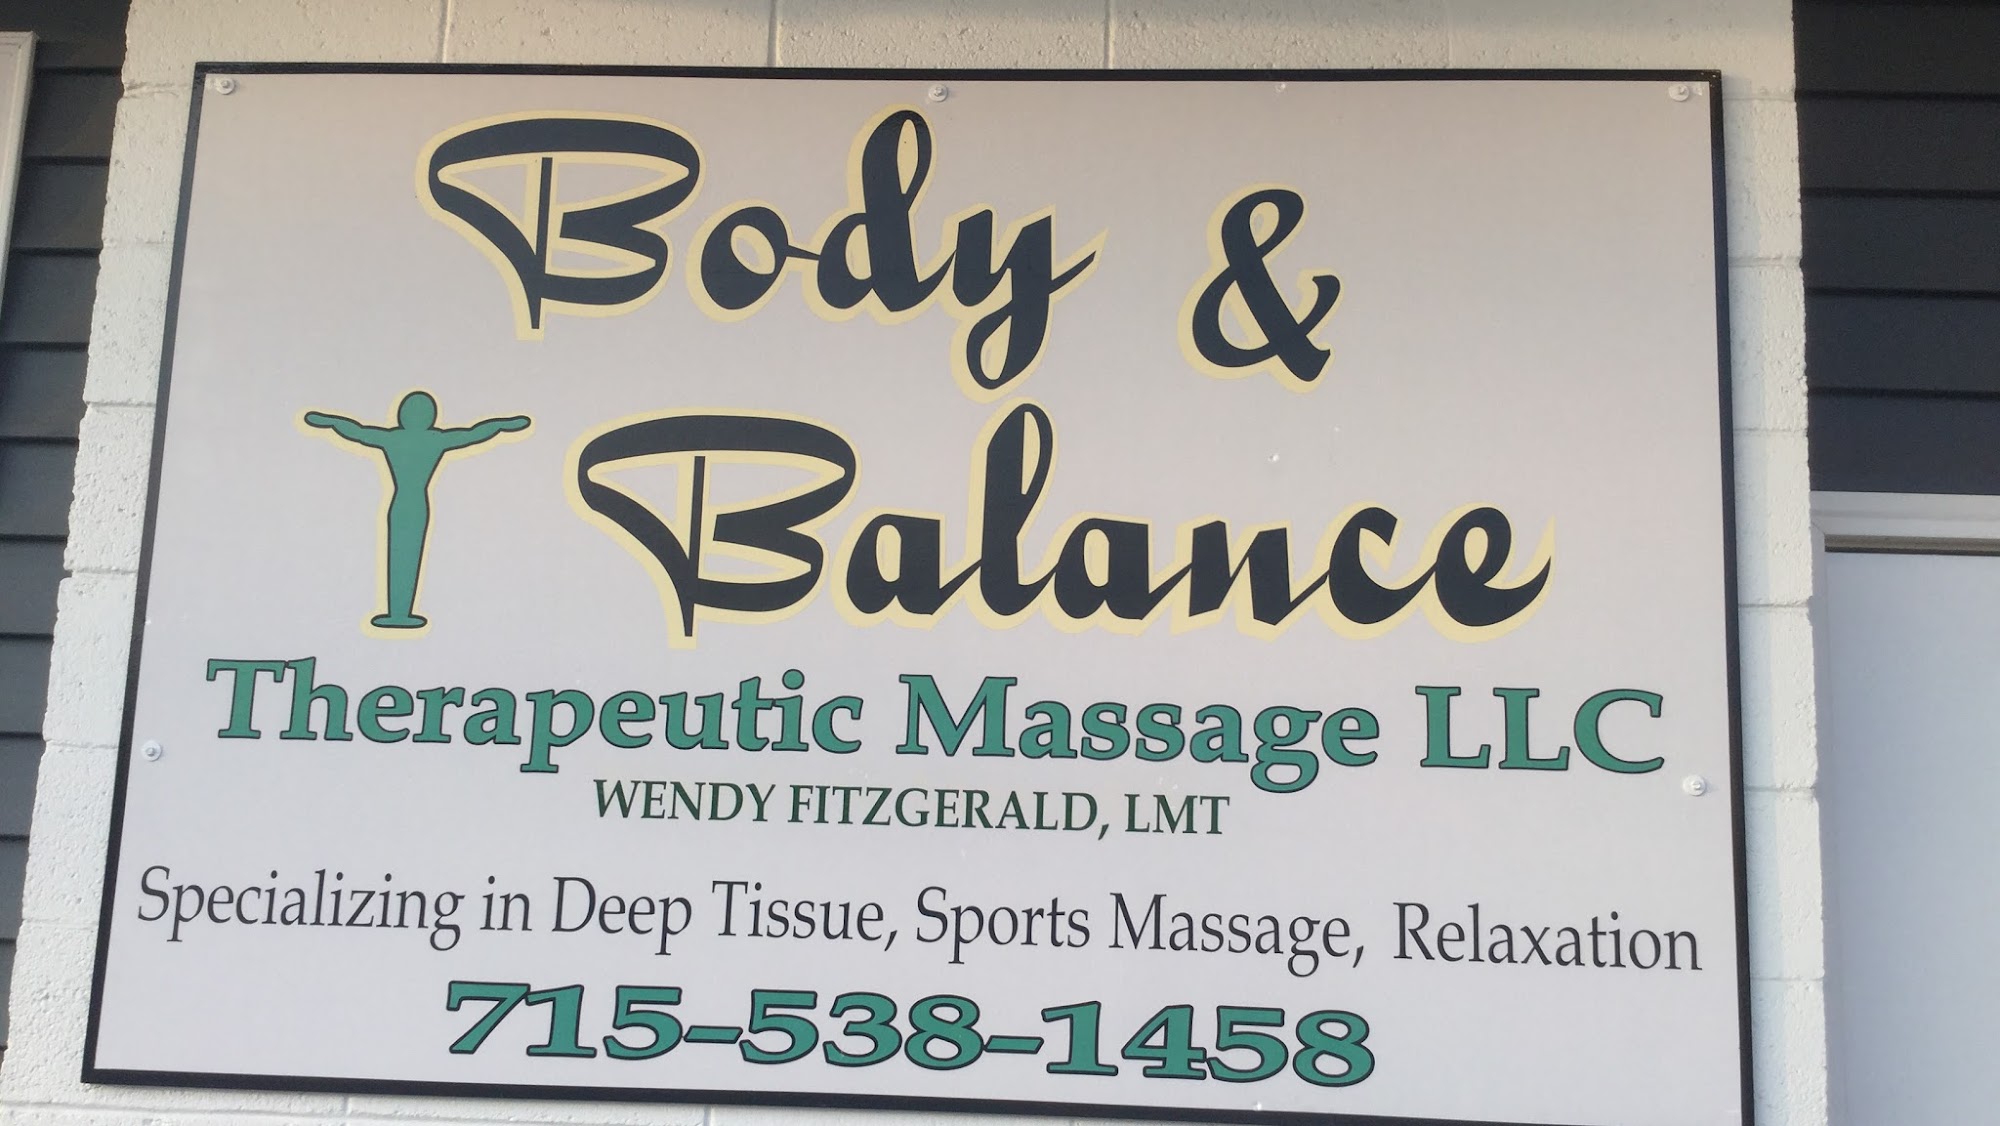 Body & Balance Therapeutic Massage LLC